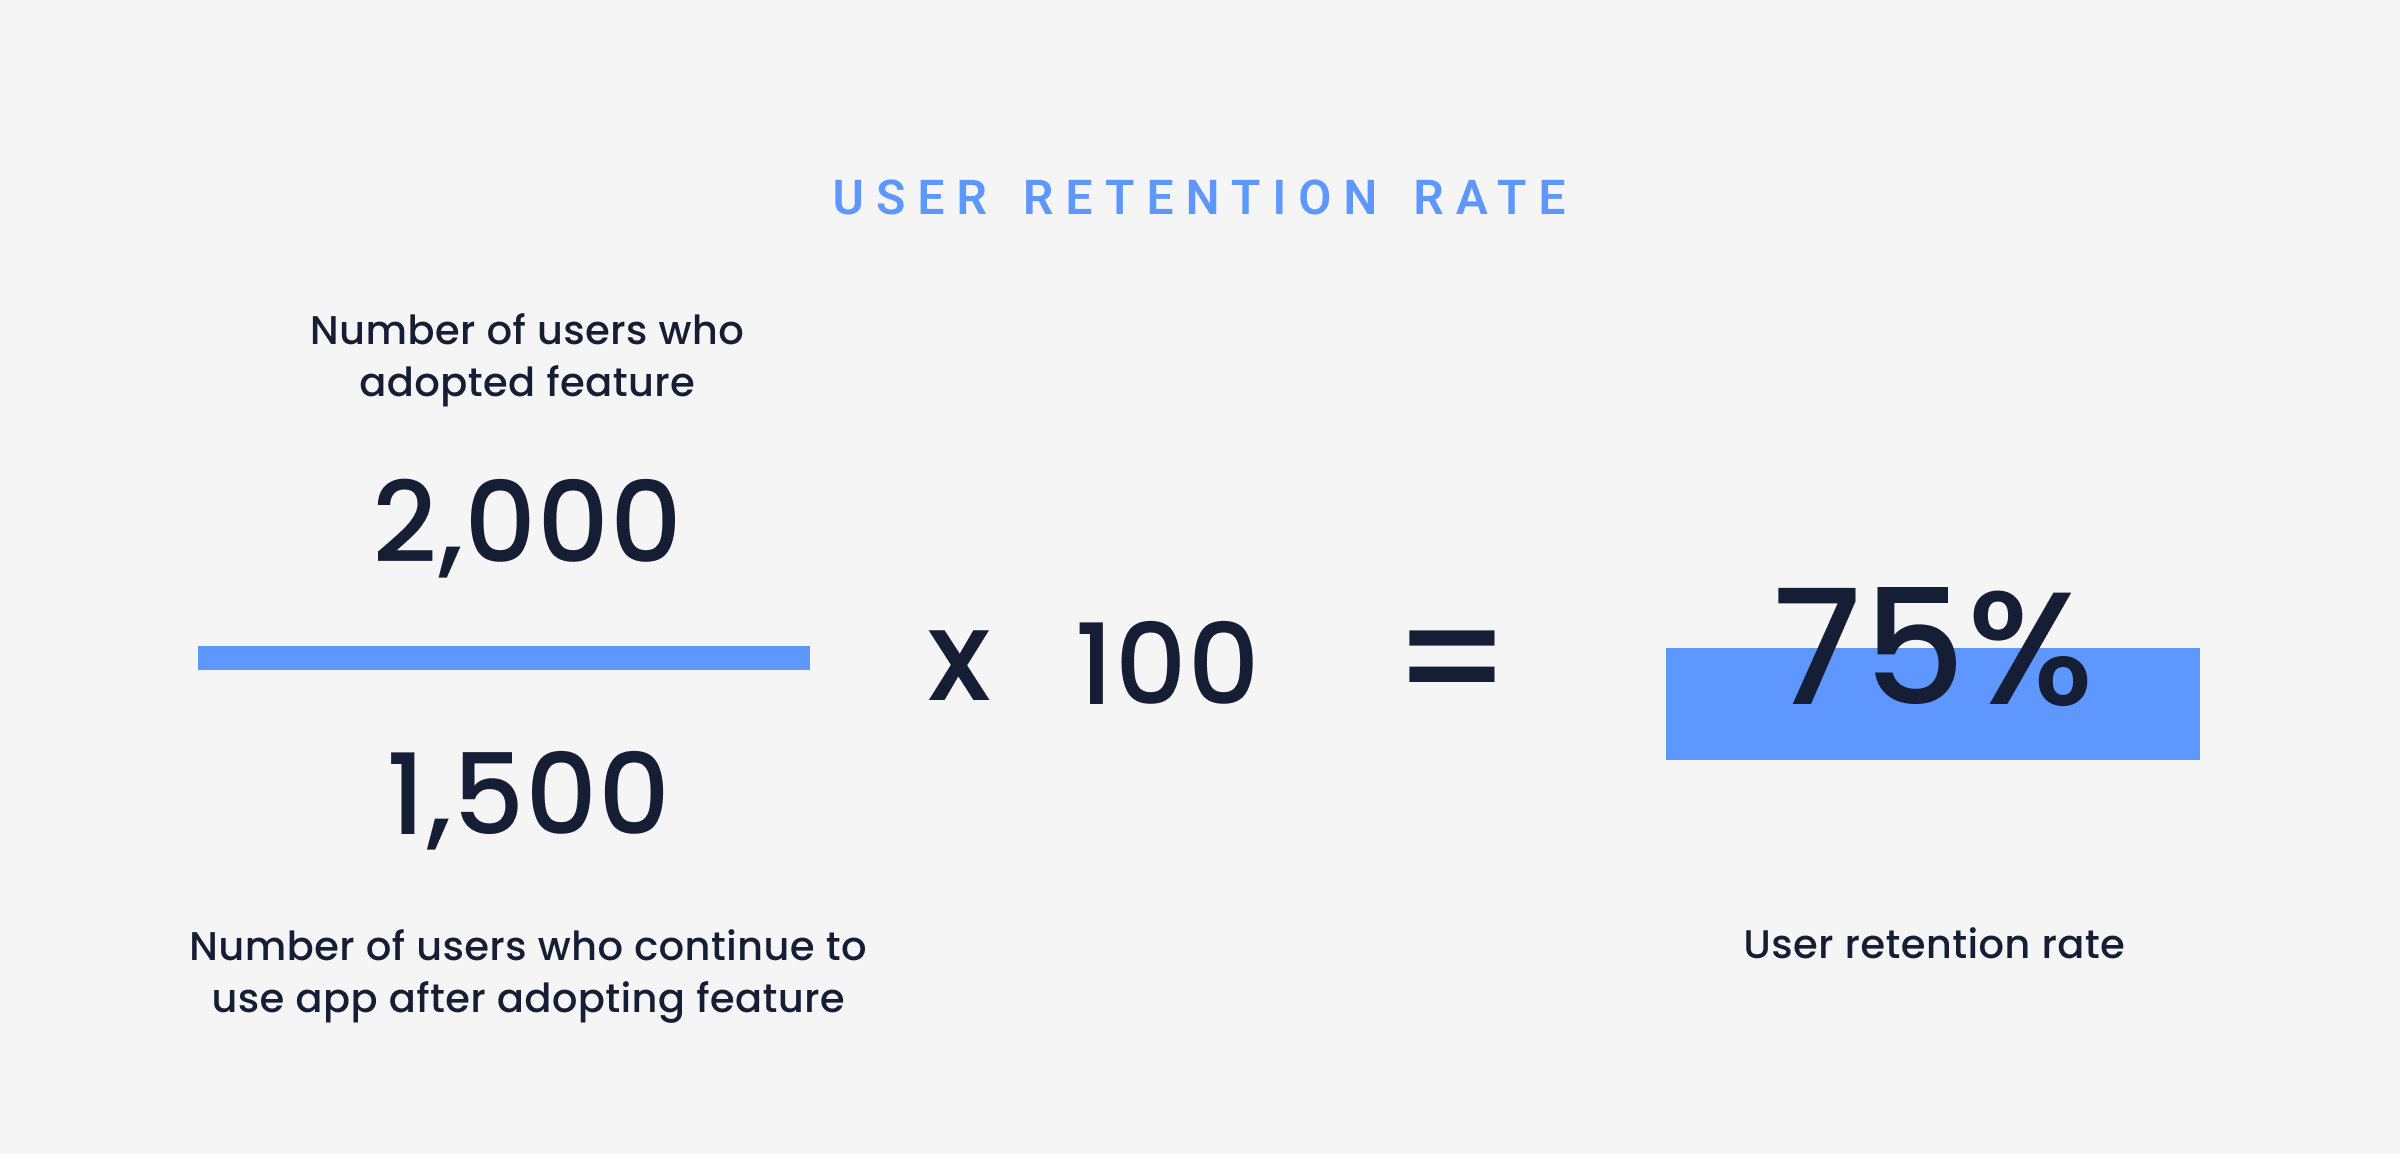 Blog Feautre 1200x630 user retention rate 6 -min